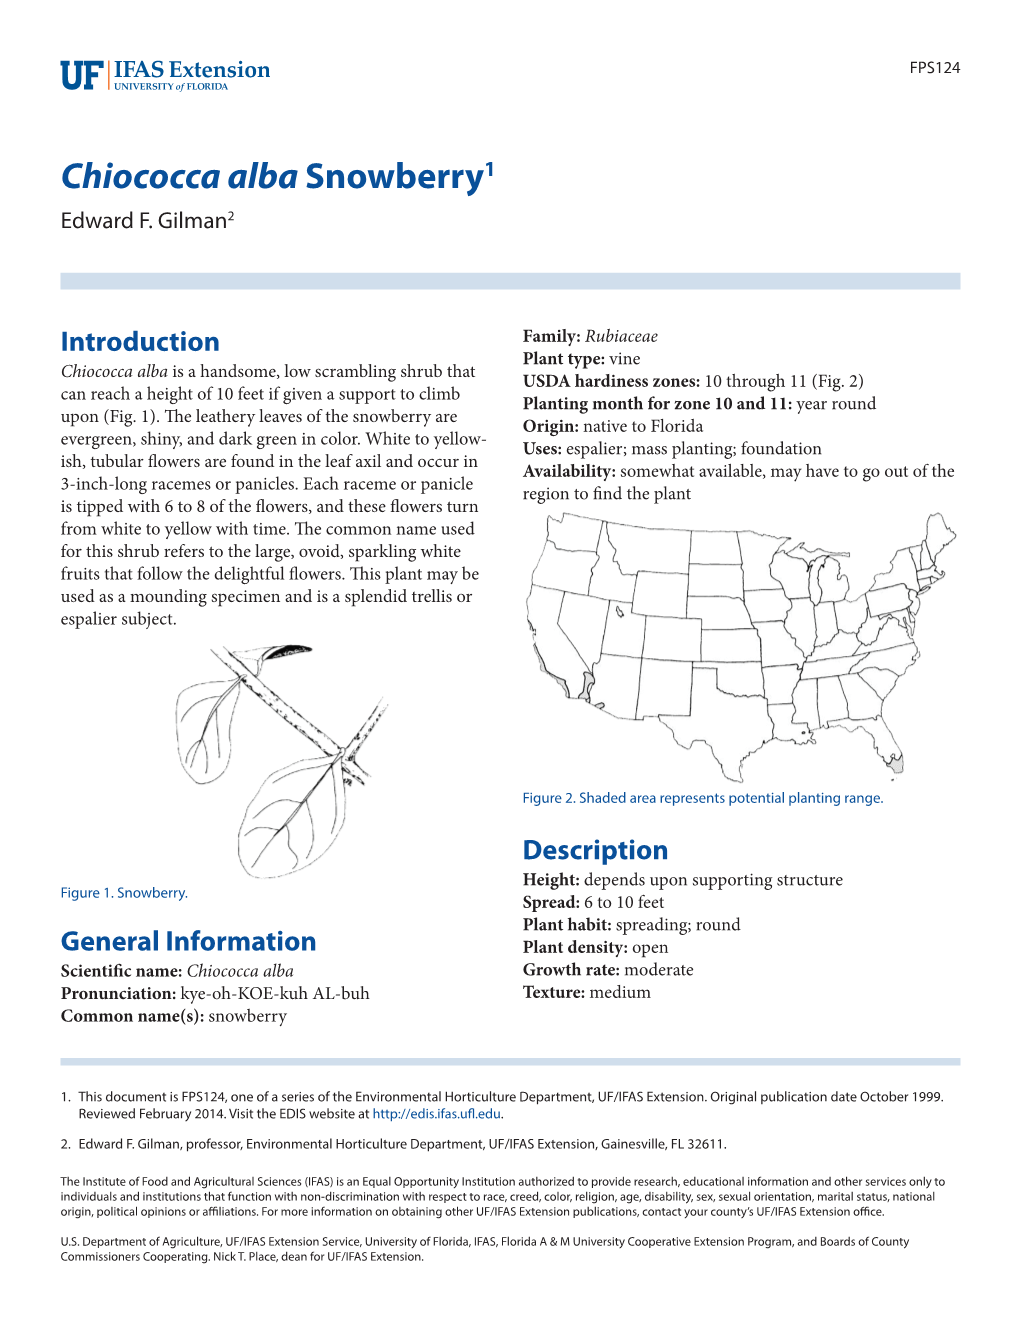 Chiococca Alba Snowberry1 Edward F